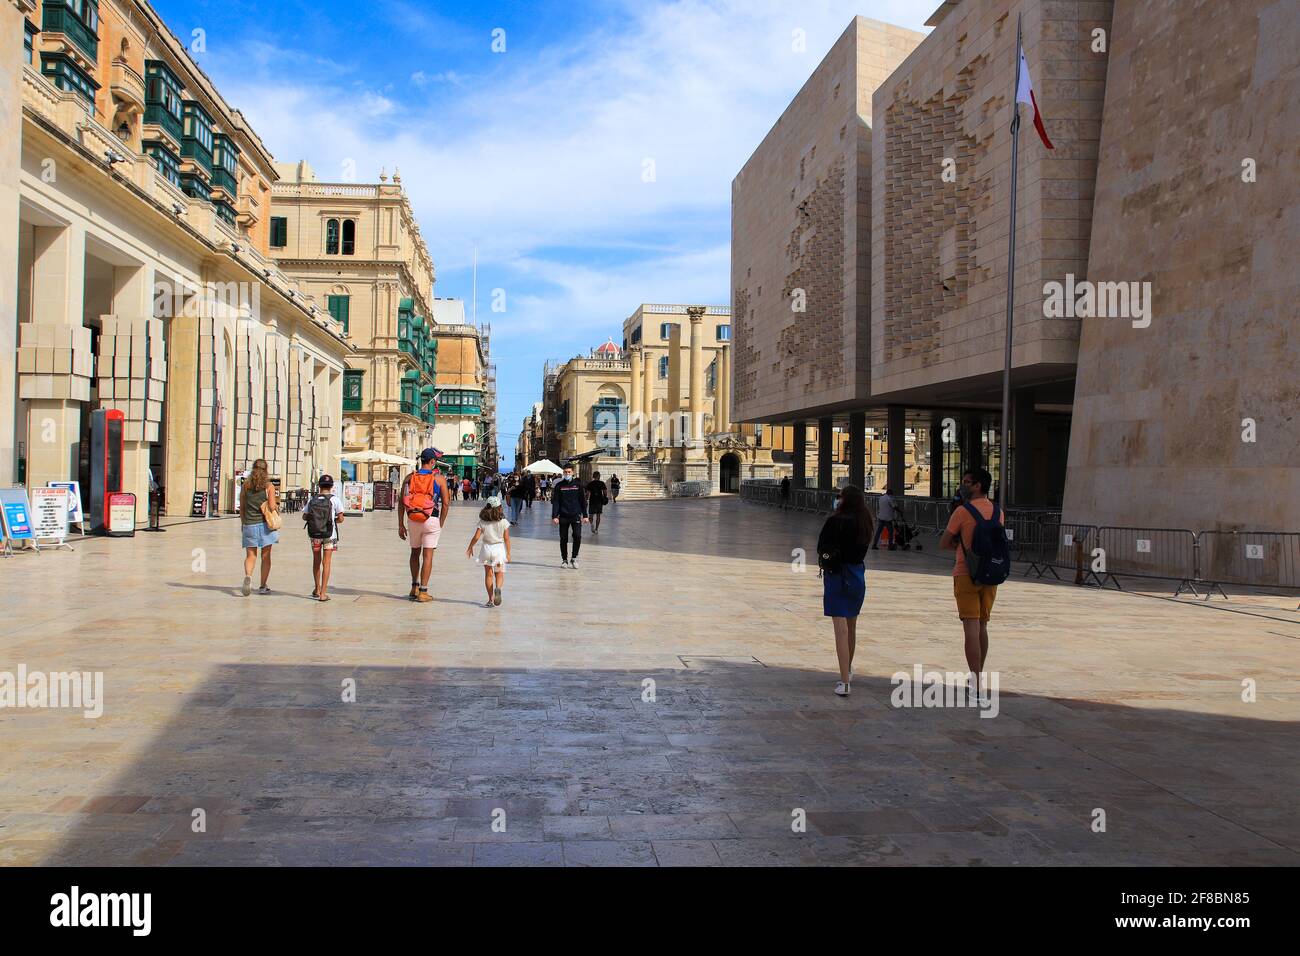 Valetta, Malta - October 22, 2020: Tourists walking along the Republic street of Valletta, Malta Stock Photo